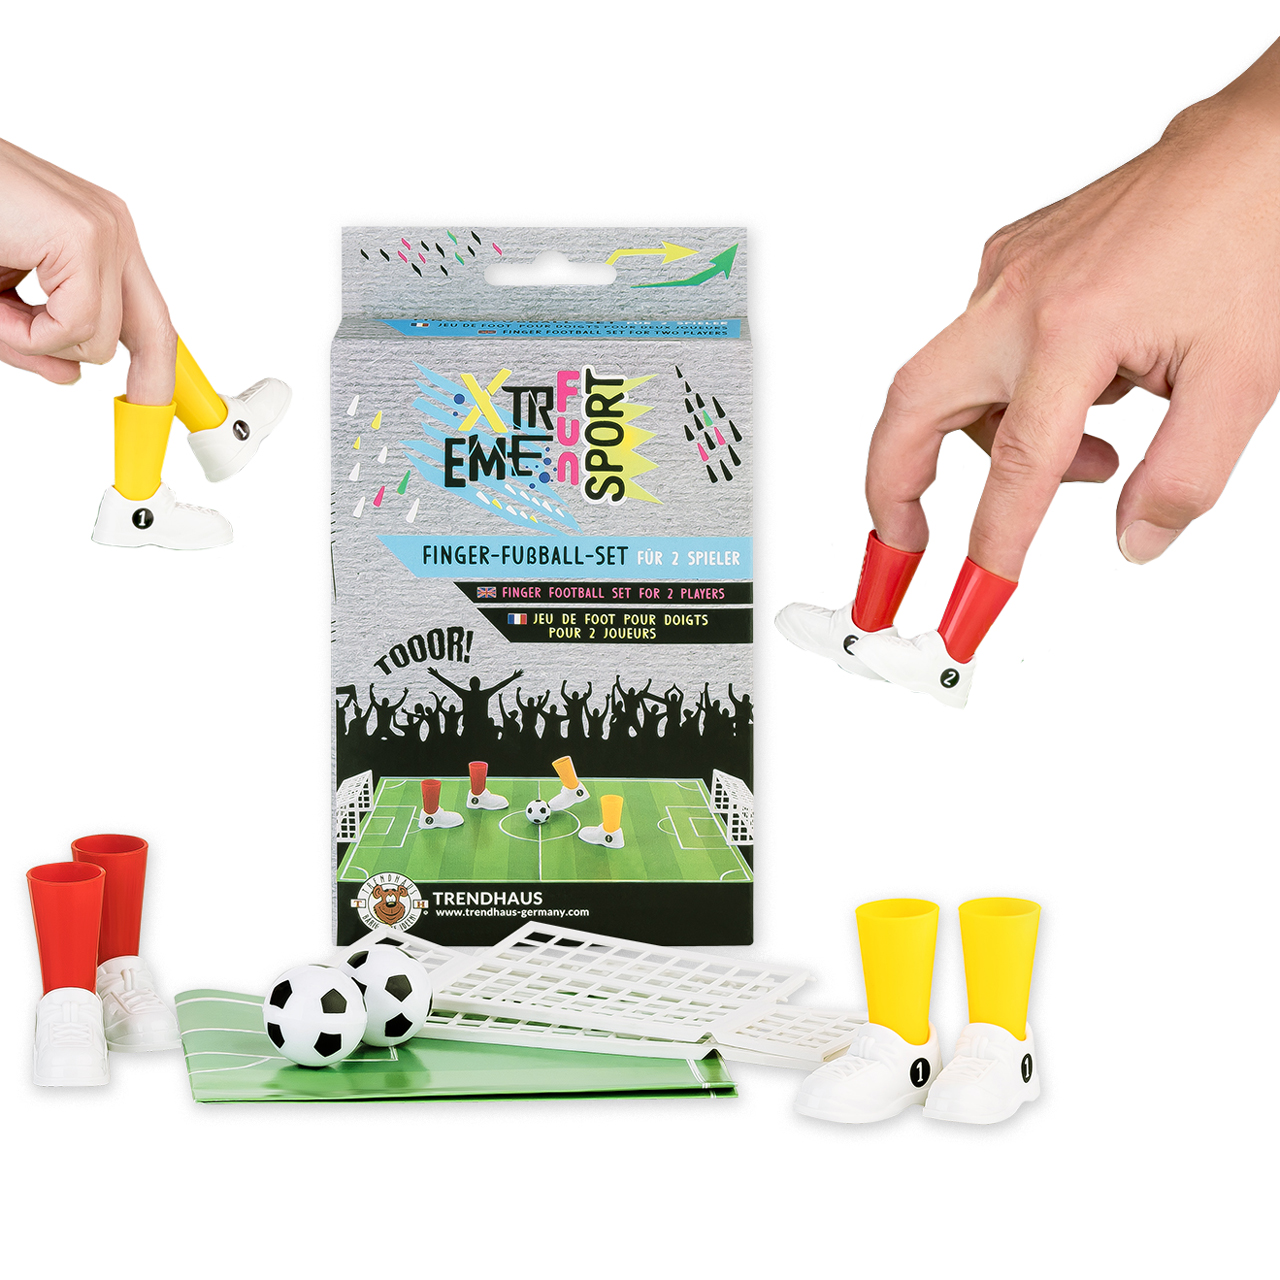 Fingerfussball-Set-2-Spieler-online-kaufen-lafueliki